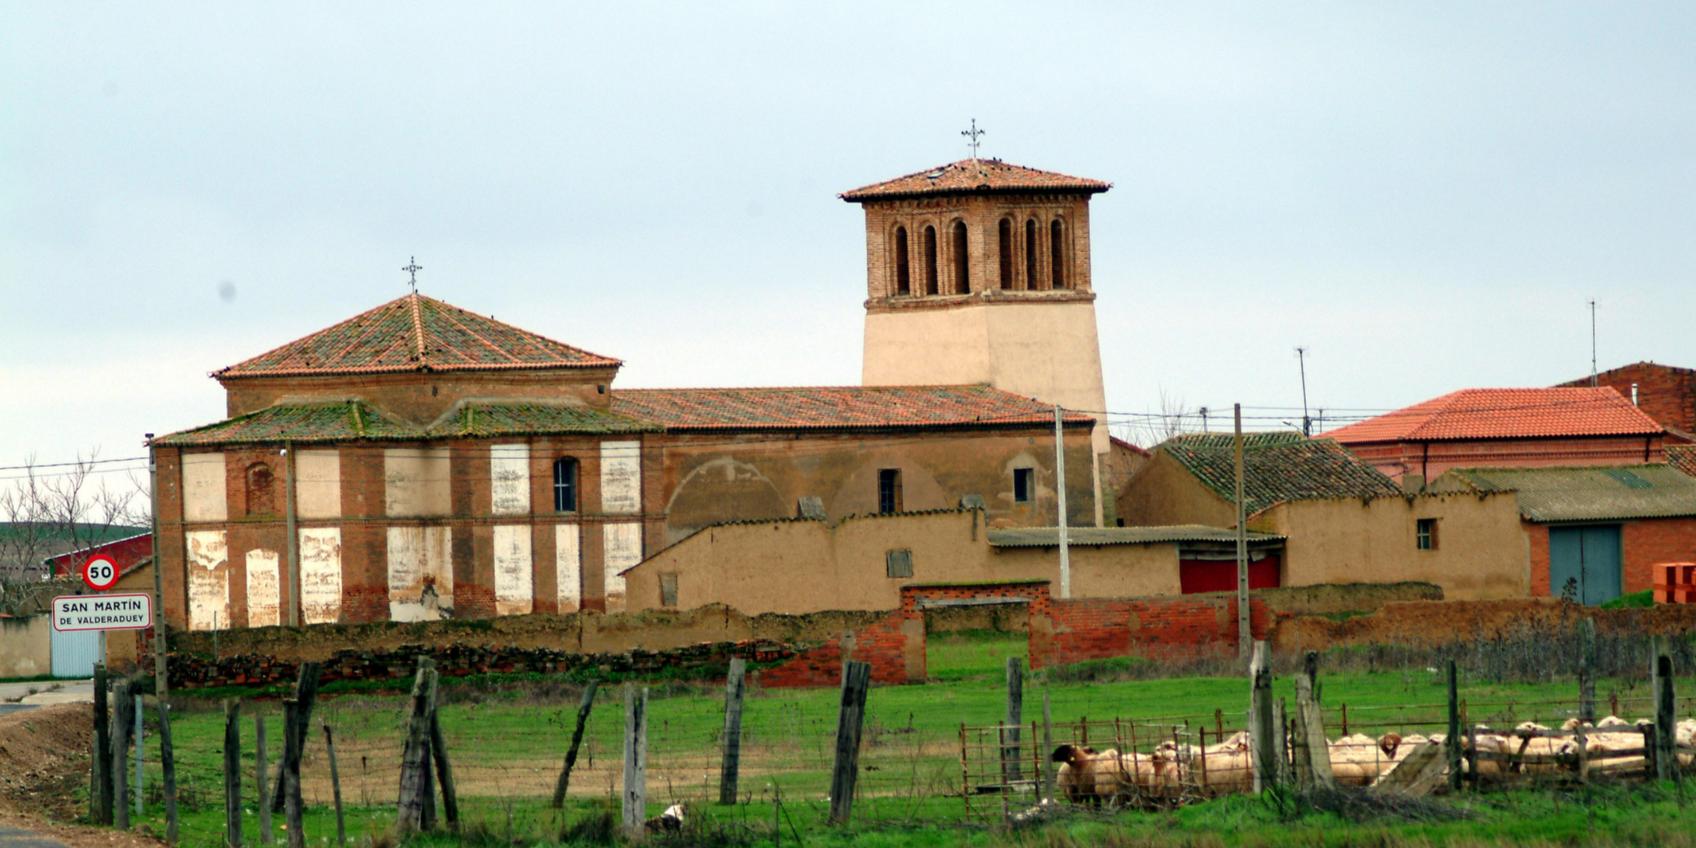 San Martín de Valderaduey